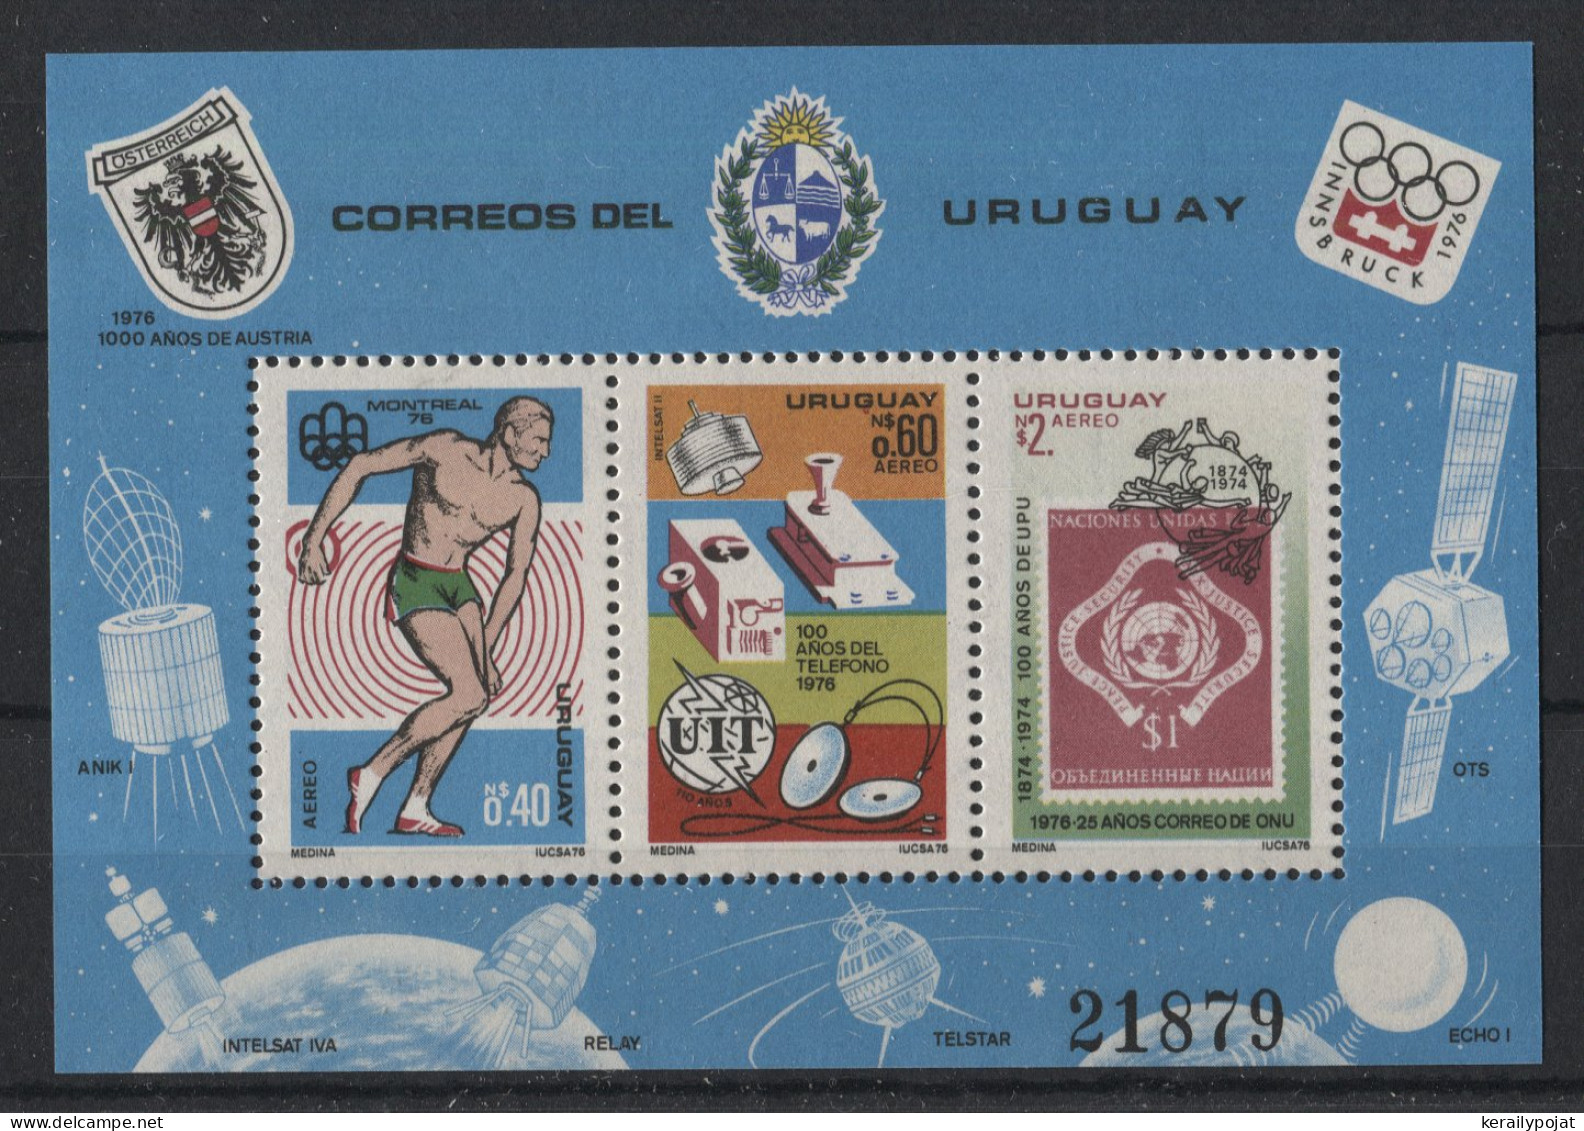 Uruguay - 1976 Annual Events 1974-1978 Block (2) MNH__(TH-24160) - Uruguay